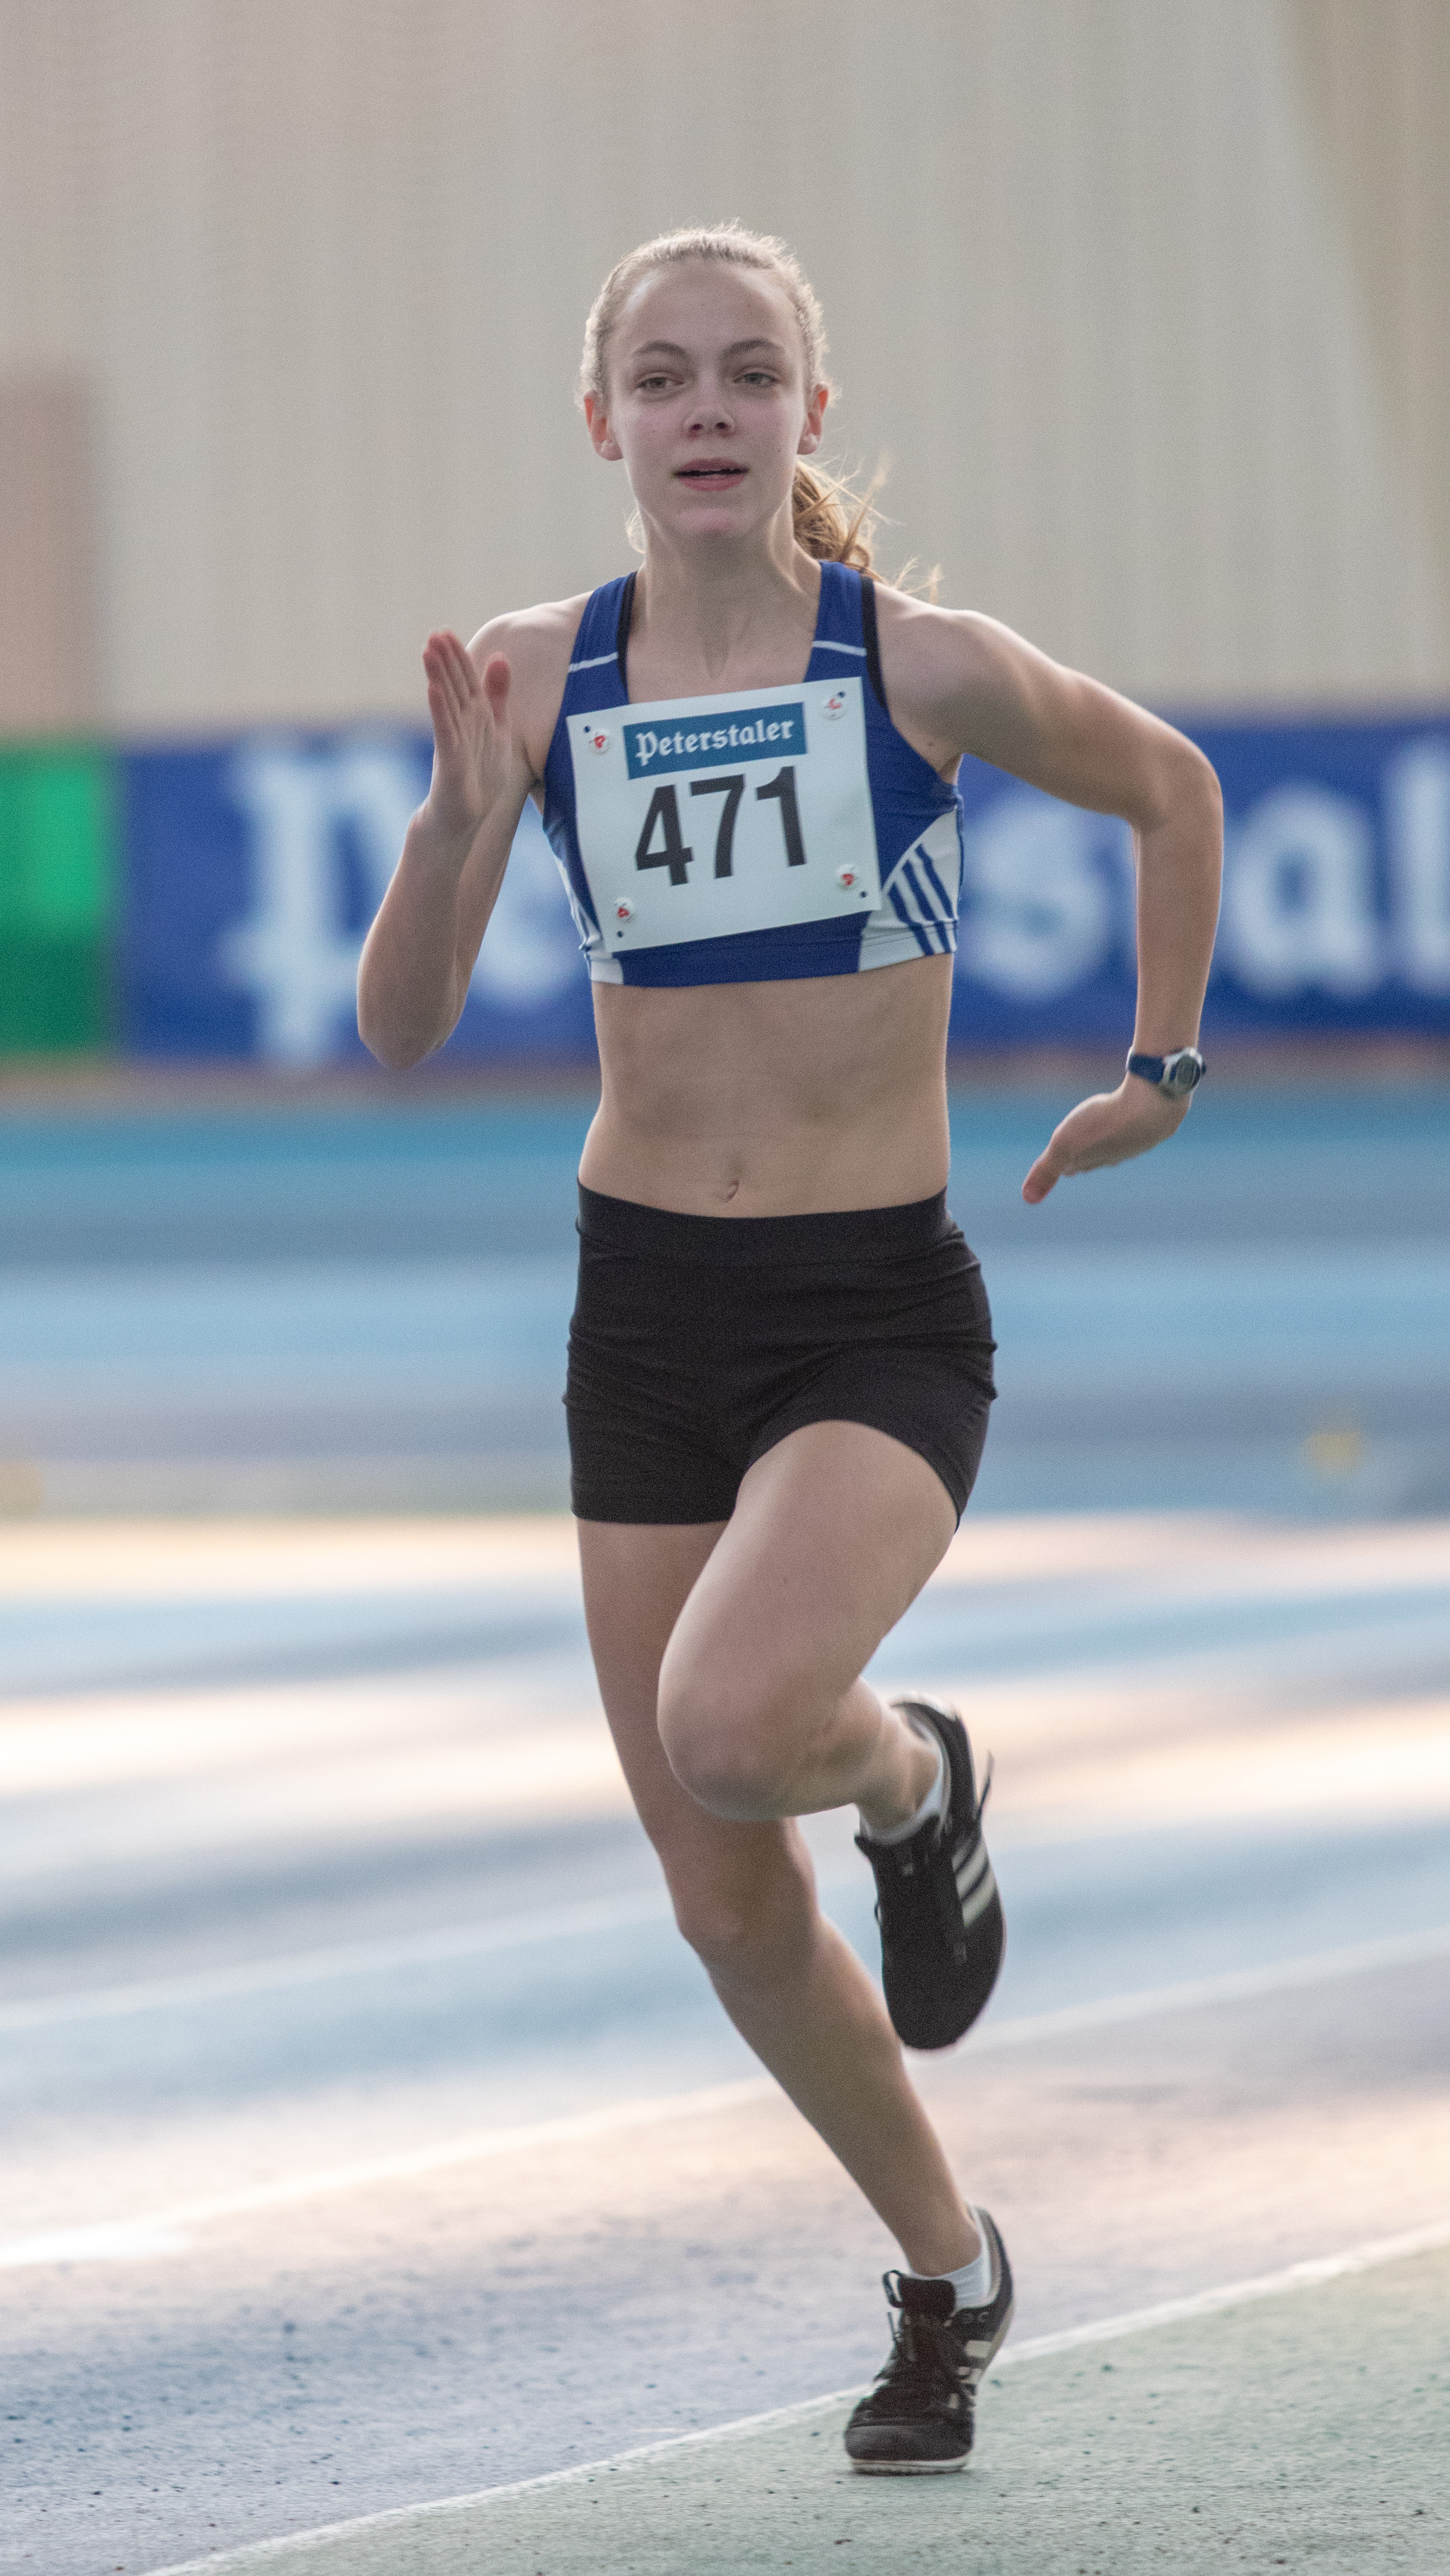 Sarah Meiser sprintet auf den 4. Platz